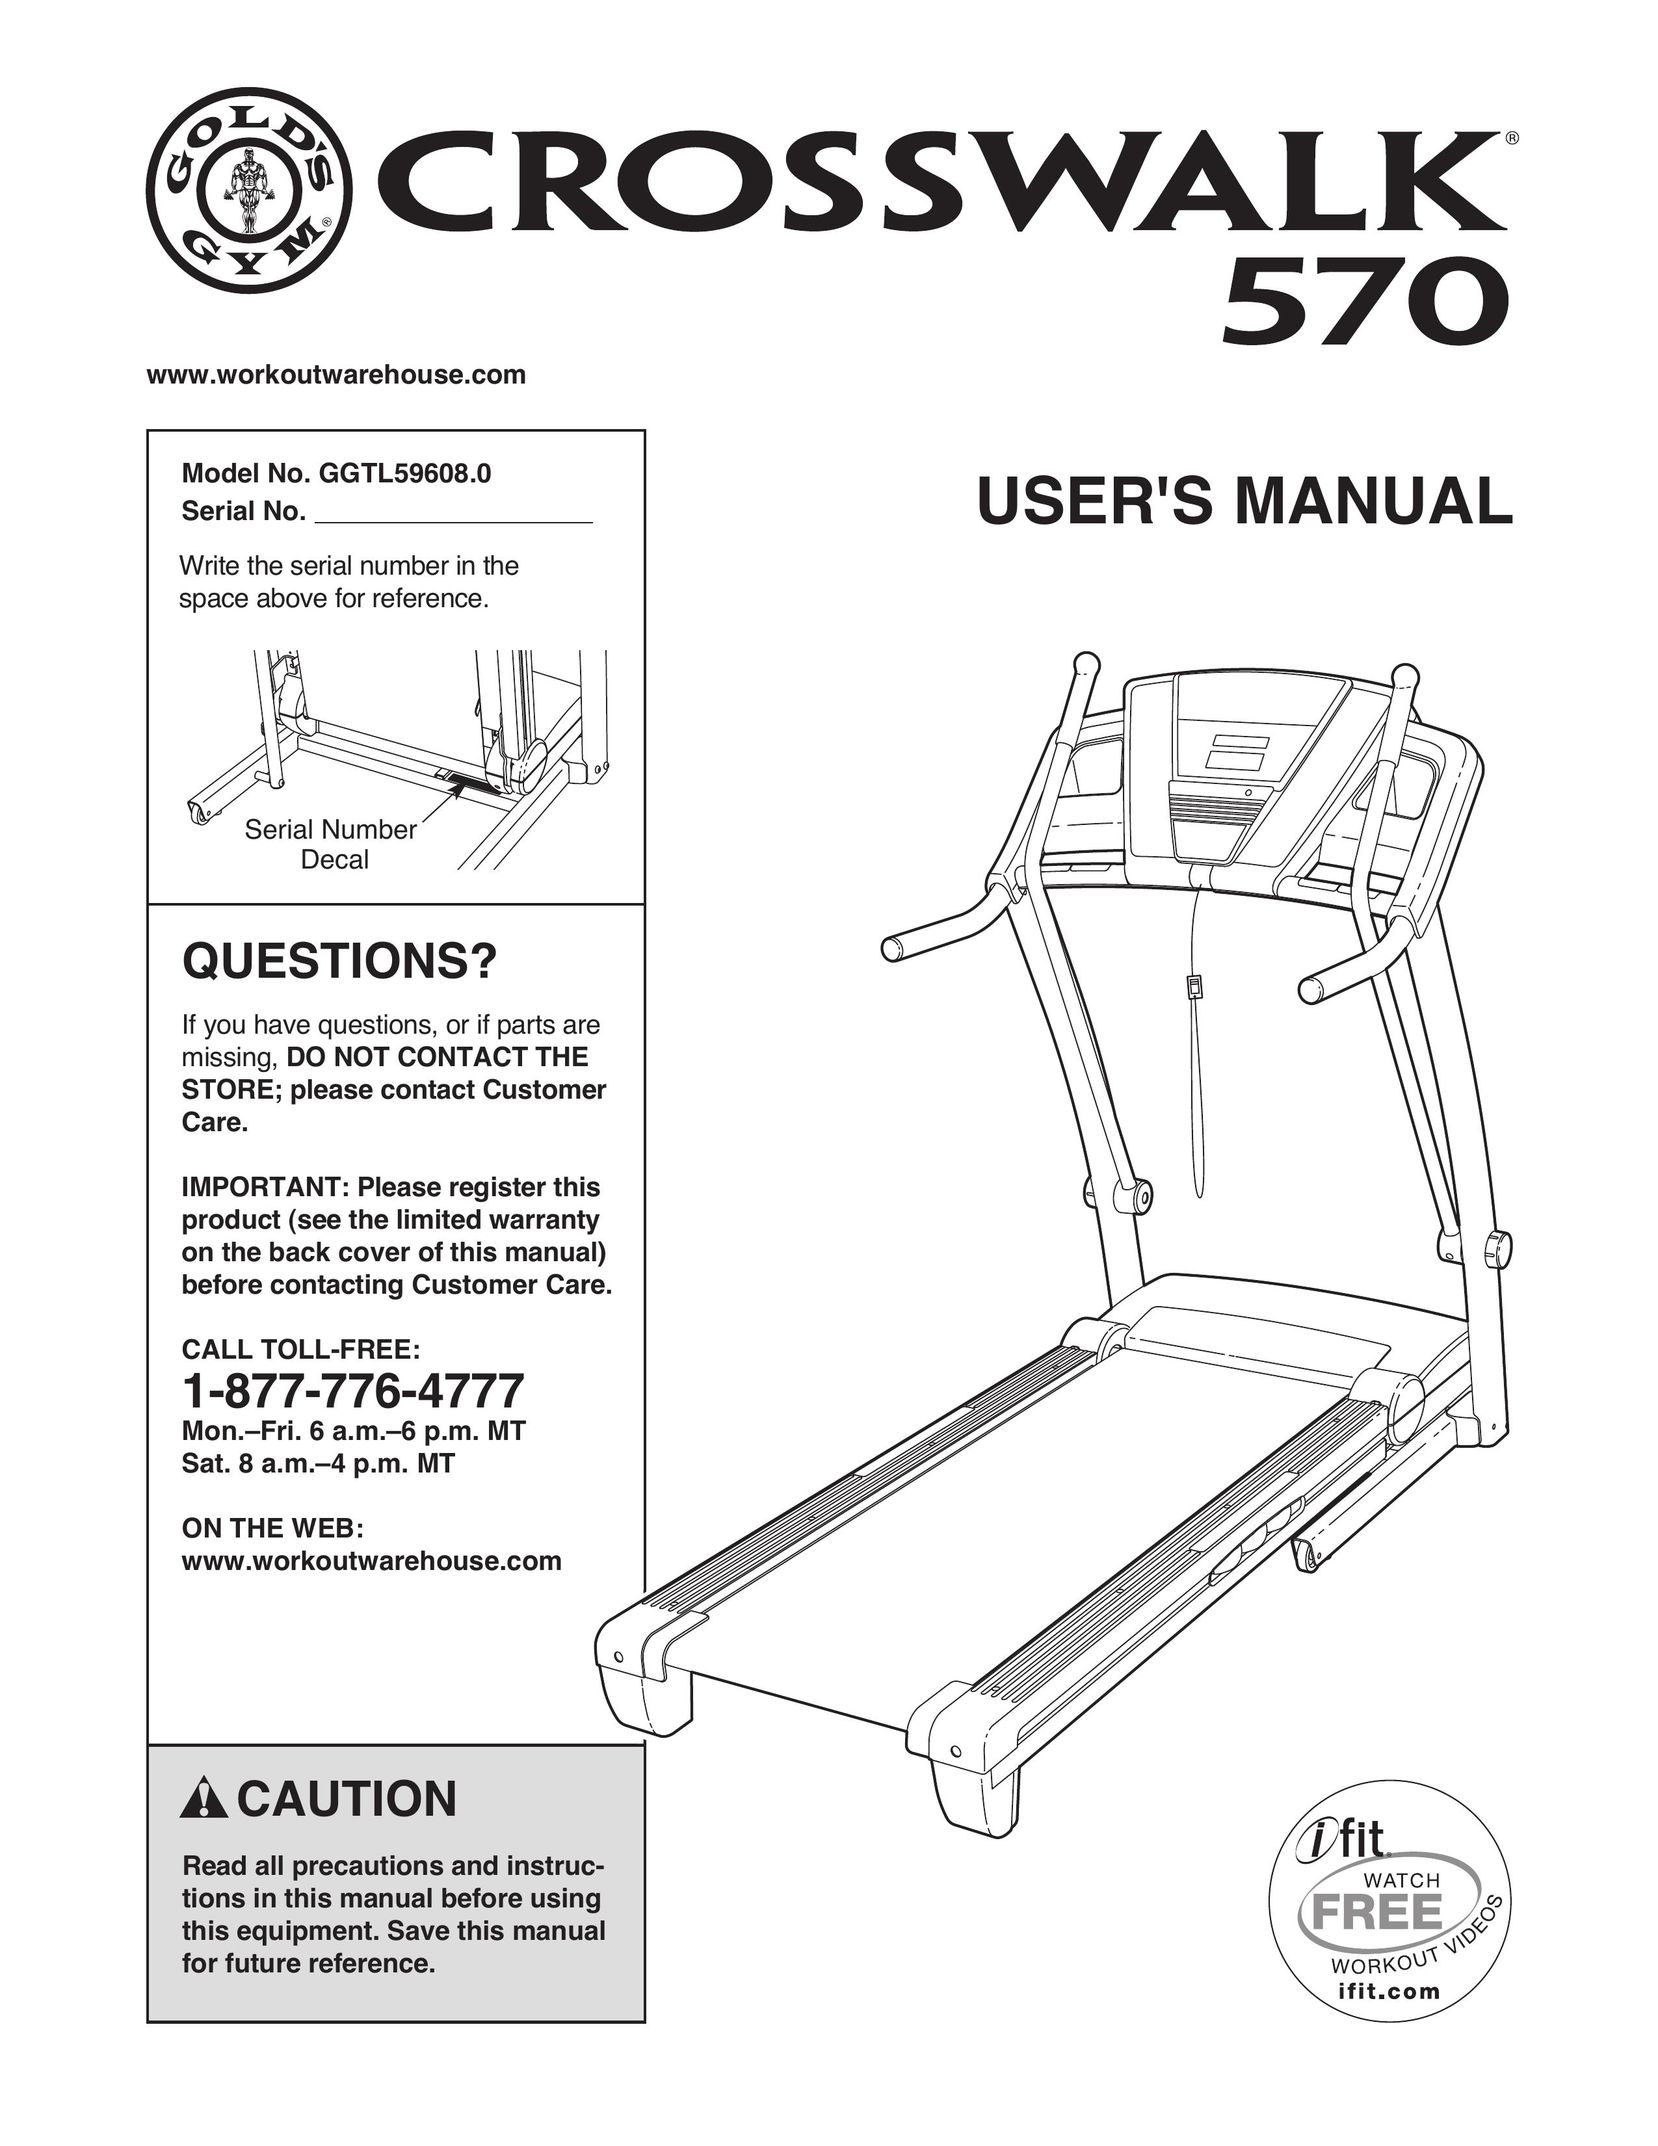 Gold's Gym GGTL59608 Treadmill User Manual